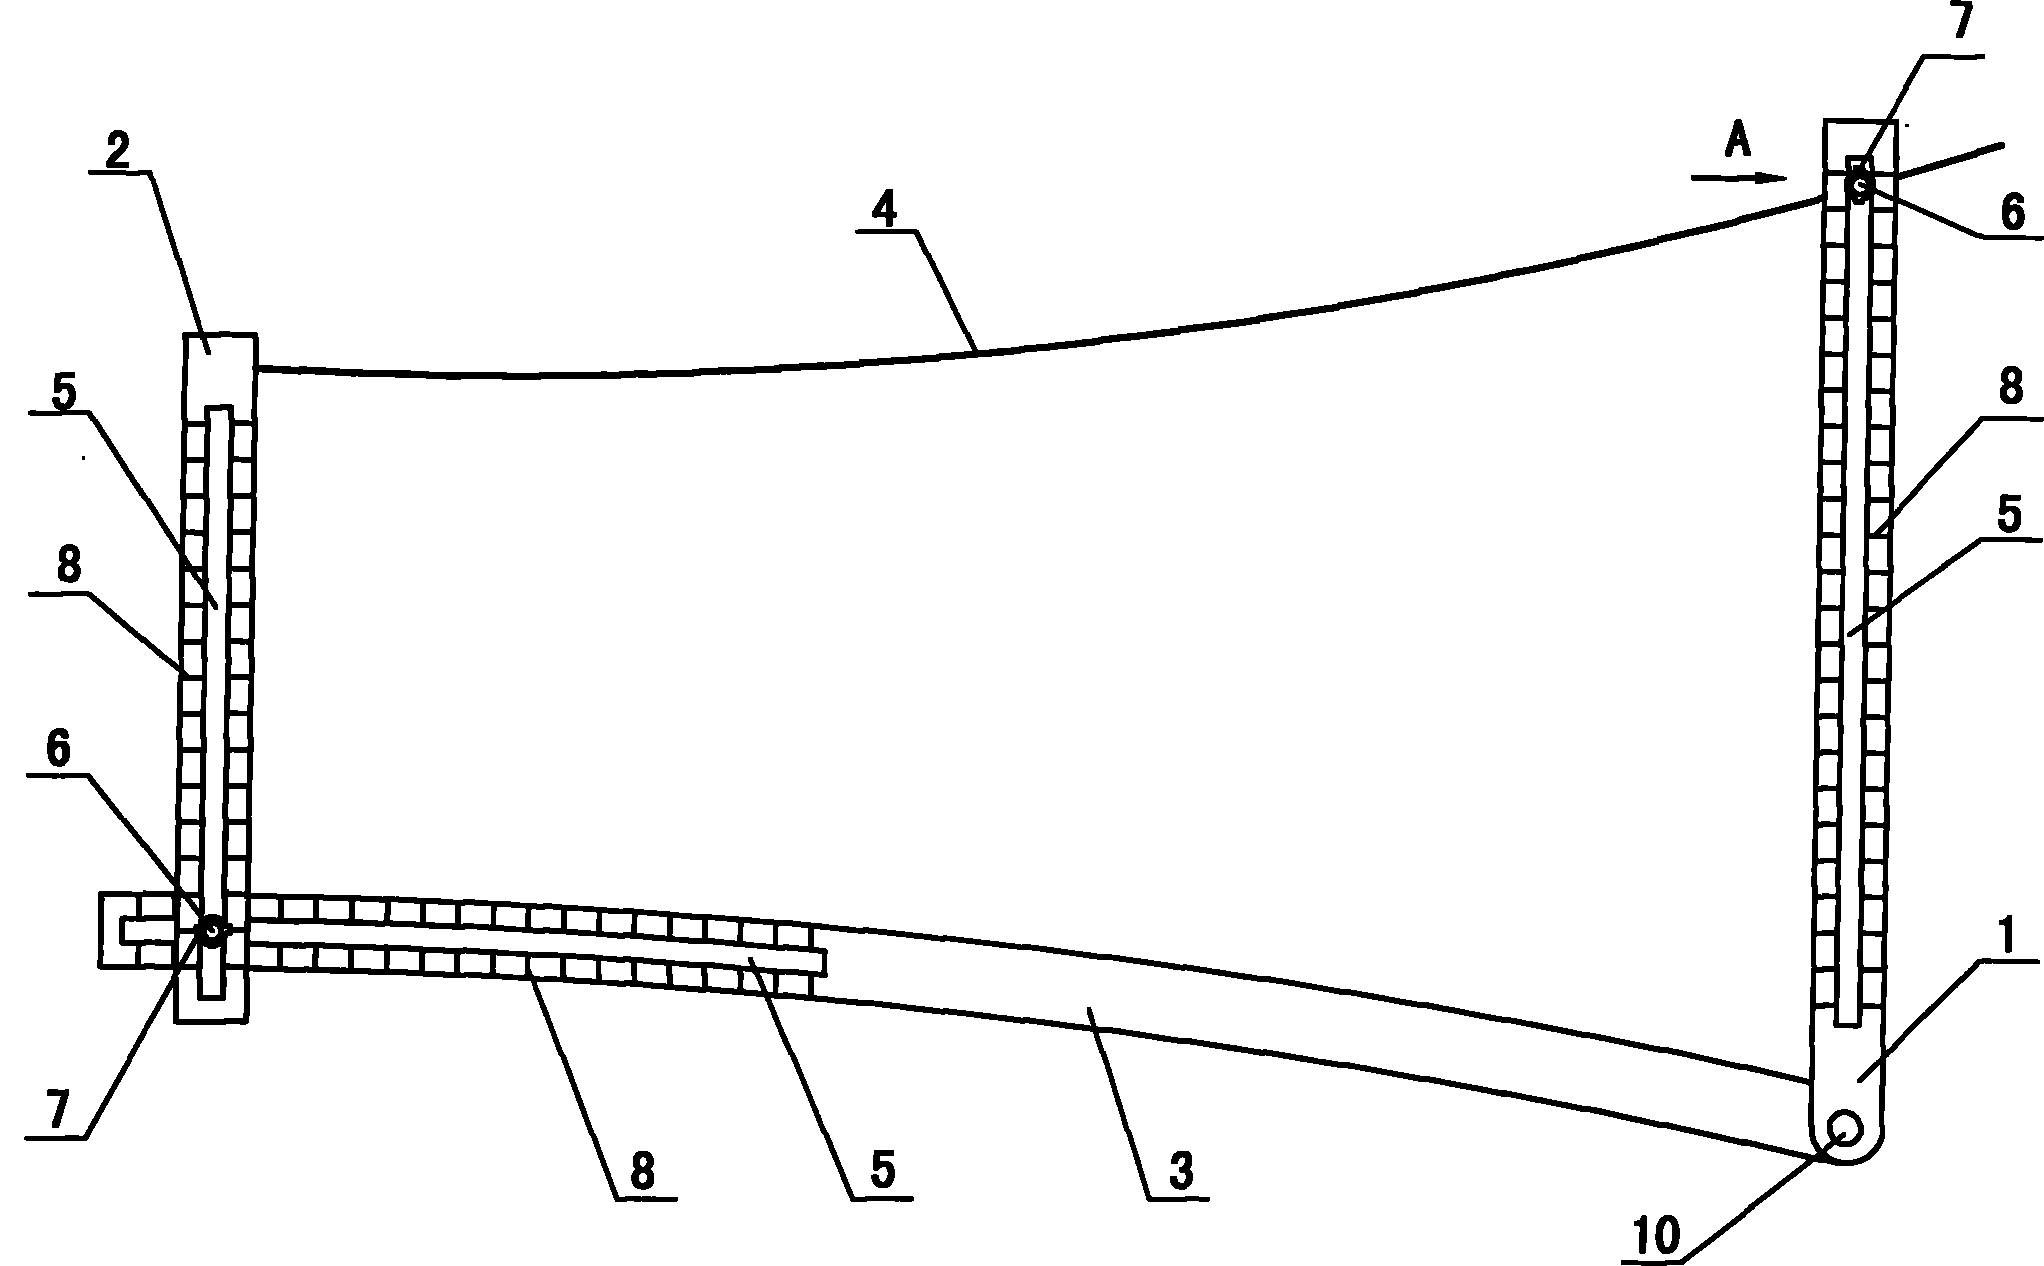 Clothing collar tailoring version ruler